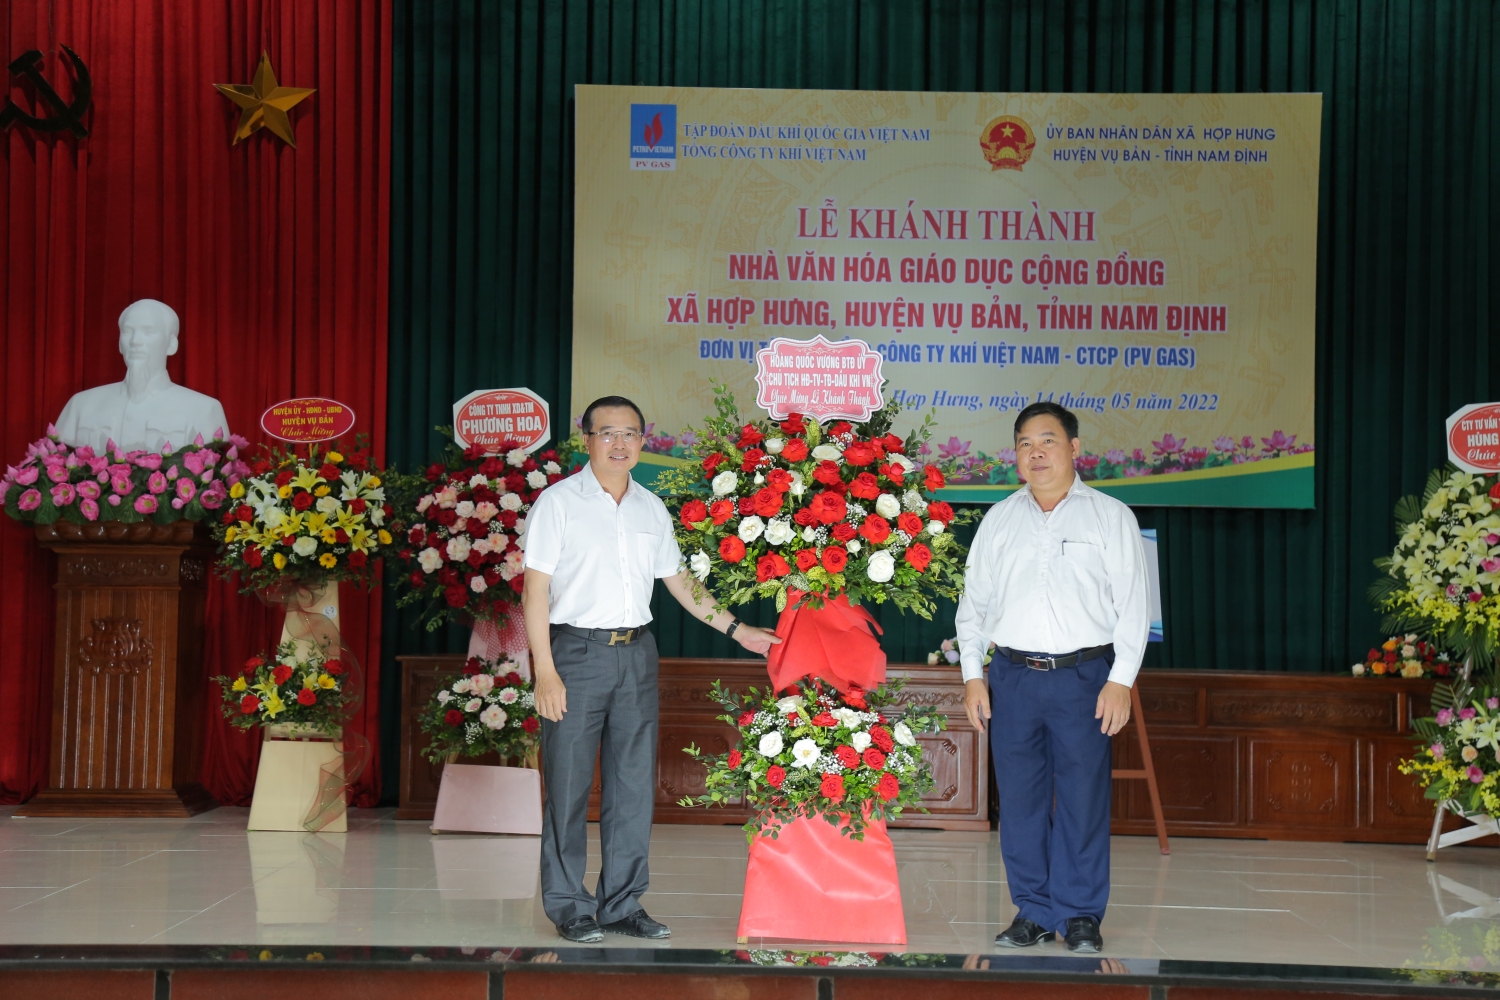 Petrovietnam/PV GAS khánh thành Nhà văn hóa giáo dục cộng đồng xã Hợp Hưng, huyện Vụ Bản, tỉnh Nam Định